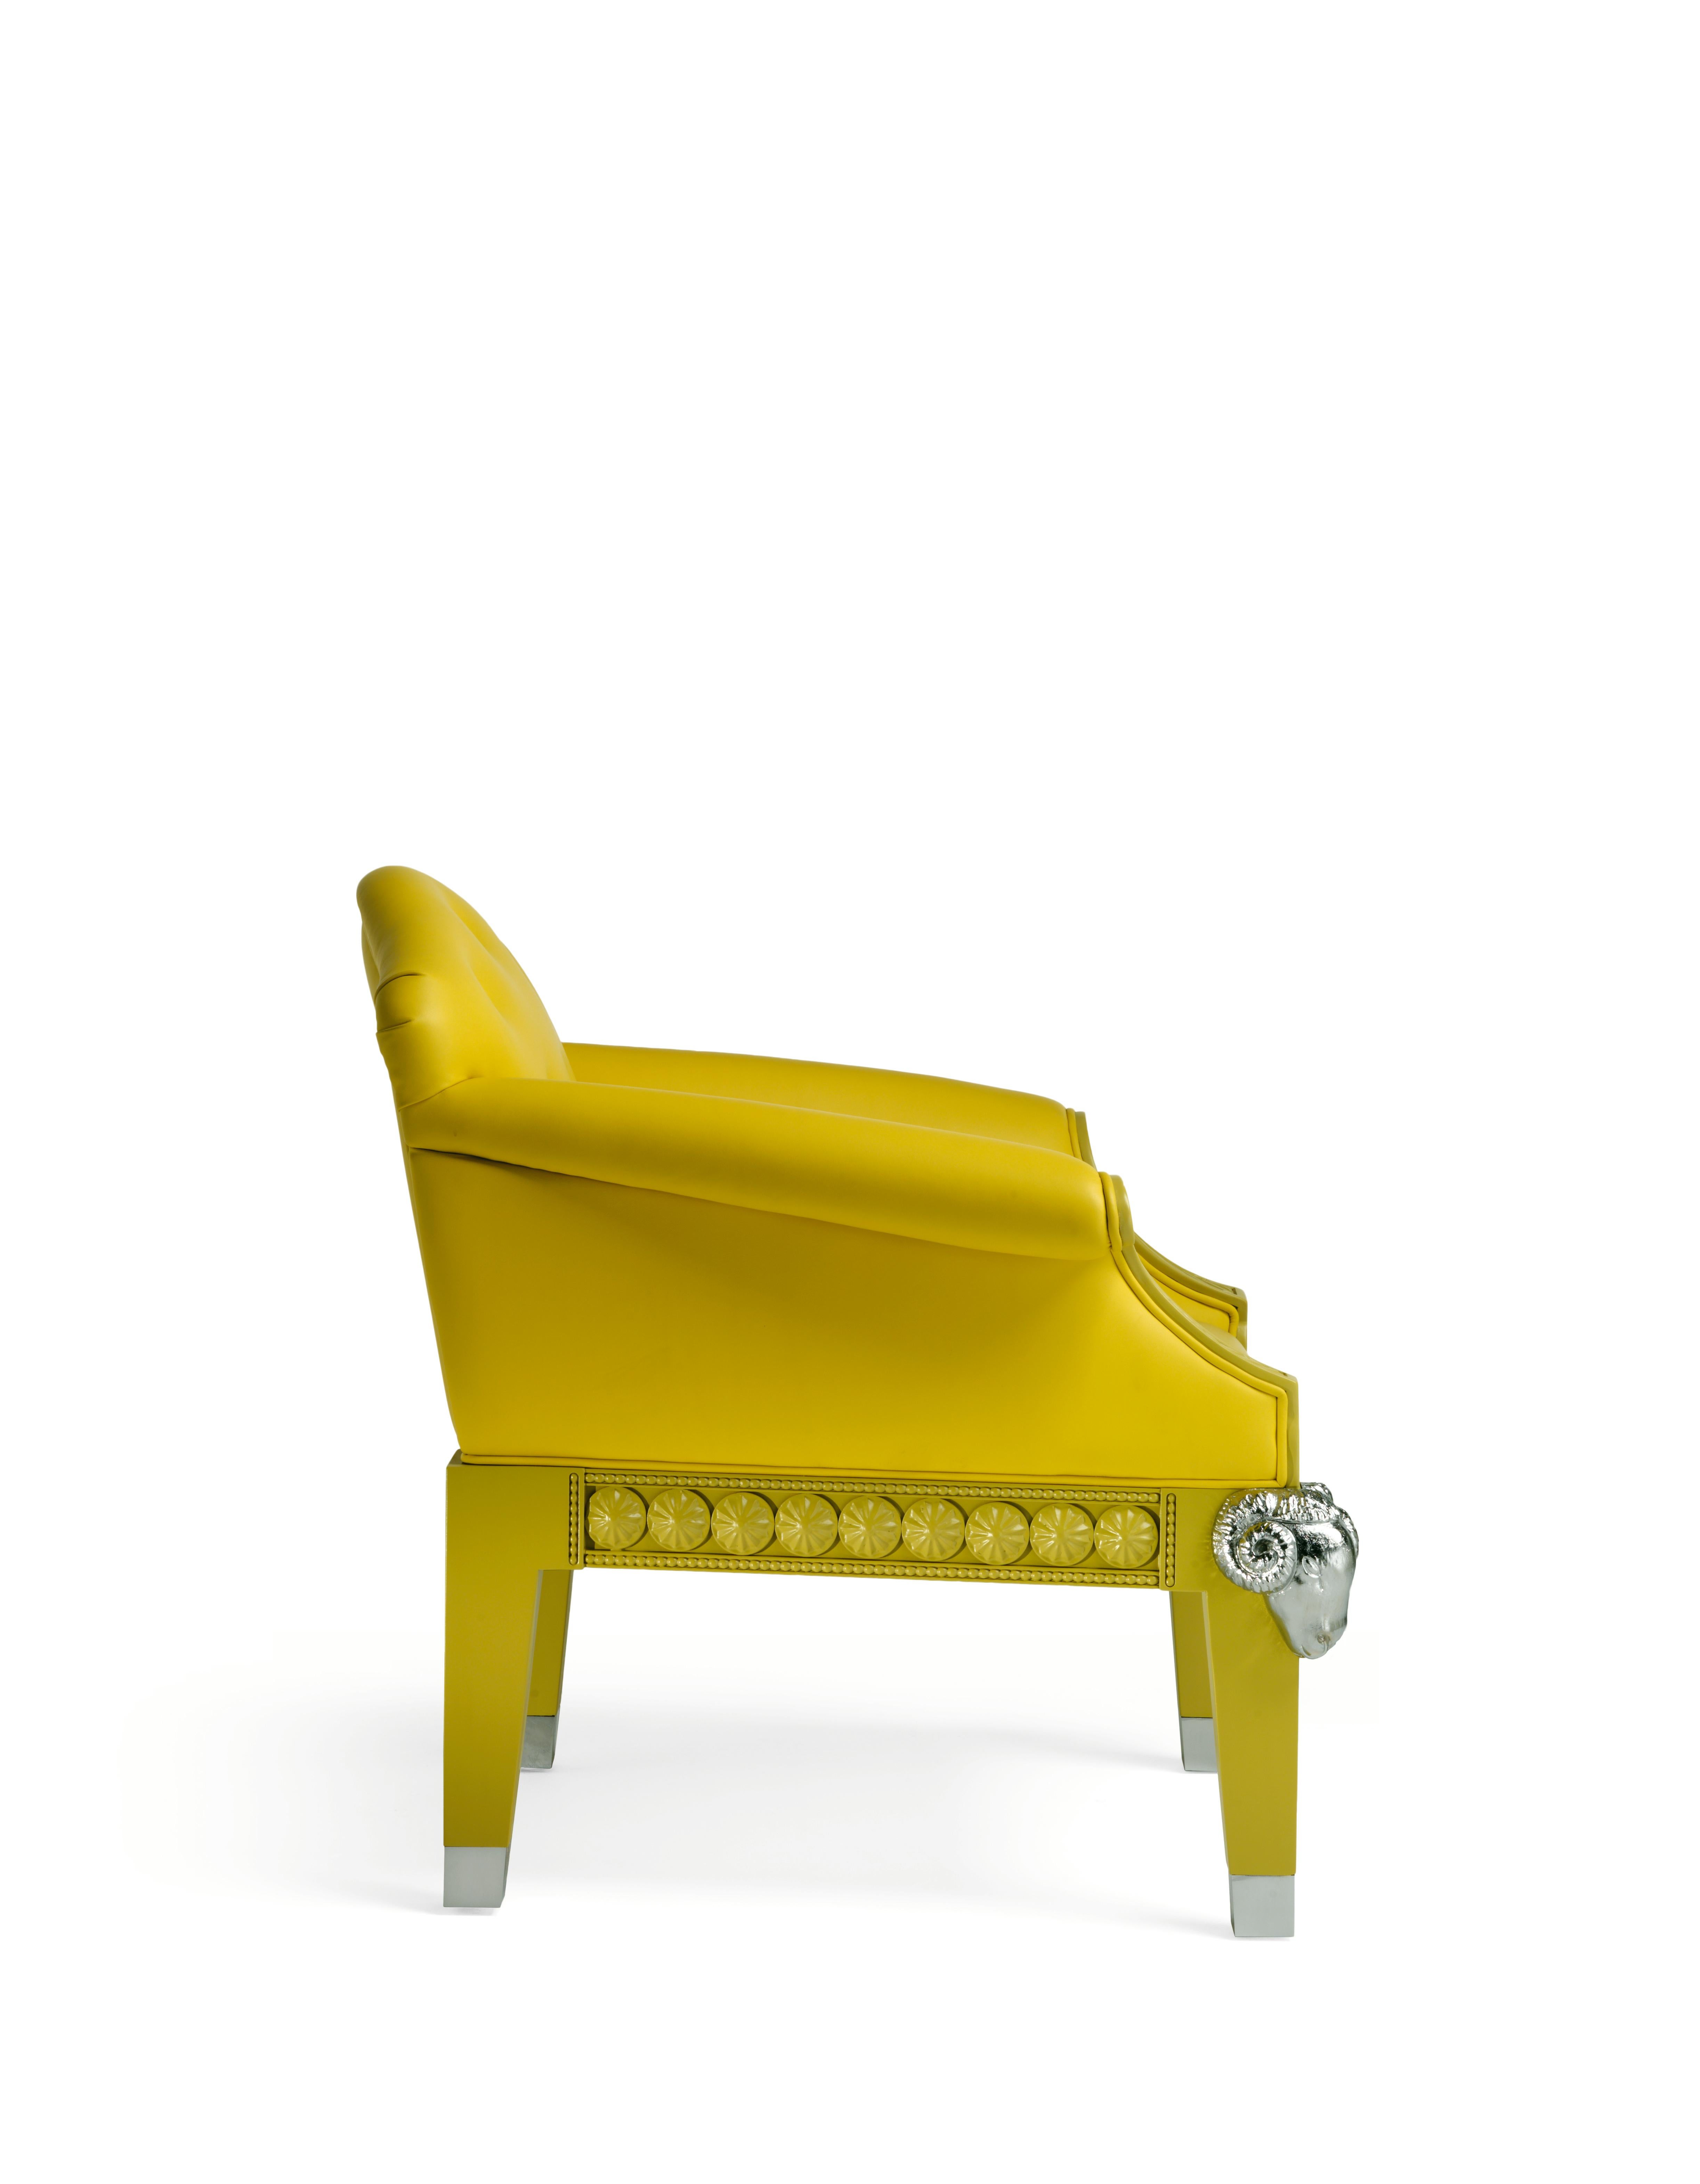 Voici le fauteuil Formidable Beast d'Archer Humphryes Architects, une fusion majestueuse d'élégance classique et d'allure contemporaine. Ce fauteuil rend hommage à la tradition intemporelle du style anglais, en s'inspirant du fauteuil capitonné